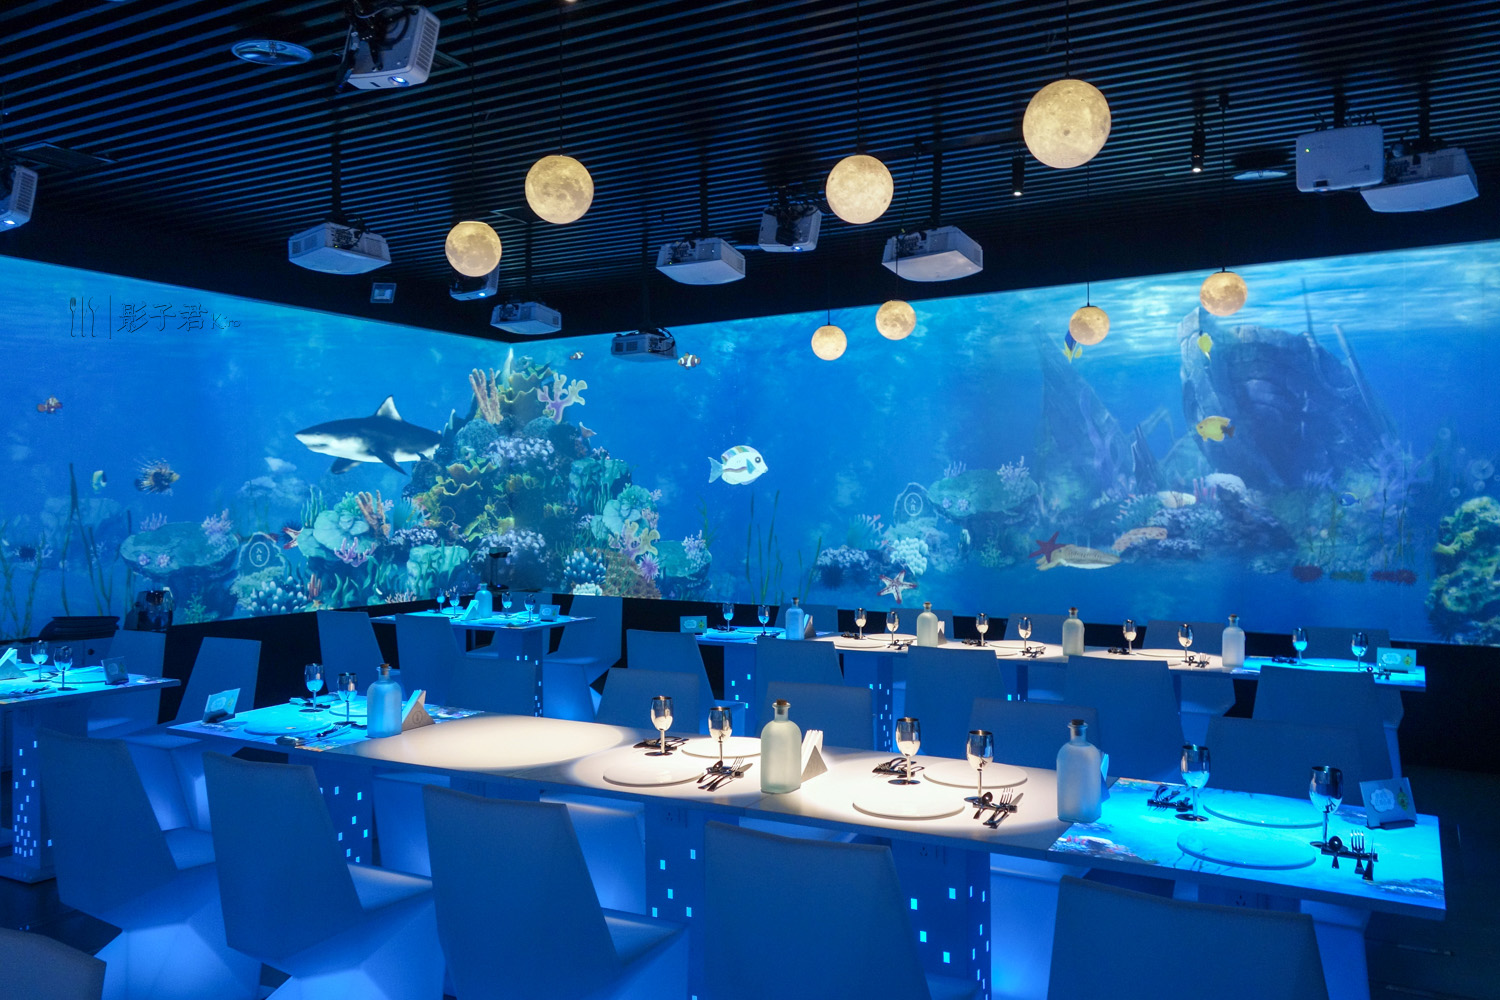 踏入餐厅,瞬间被360度环绕的蓝色海洋世界给包围住了